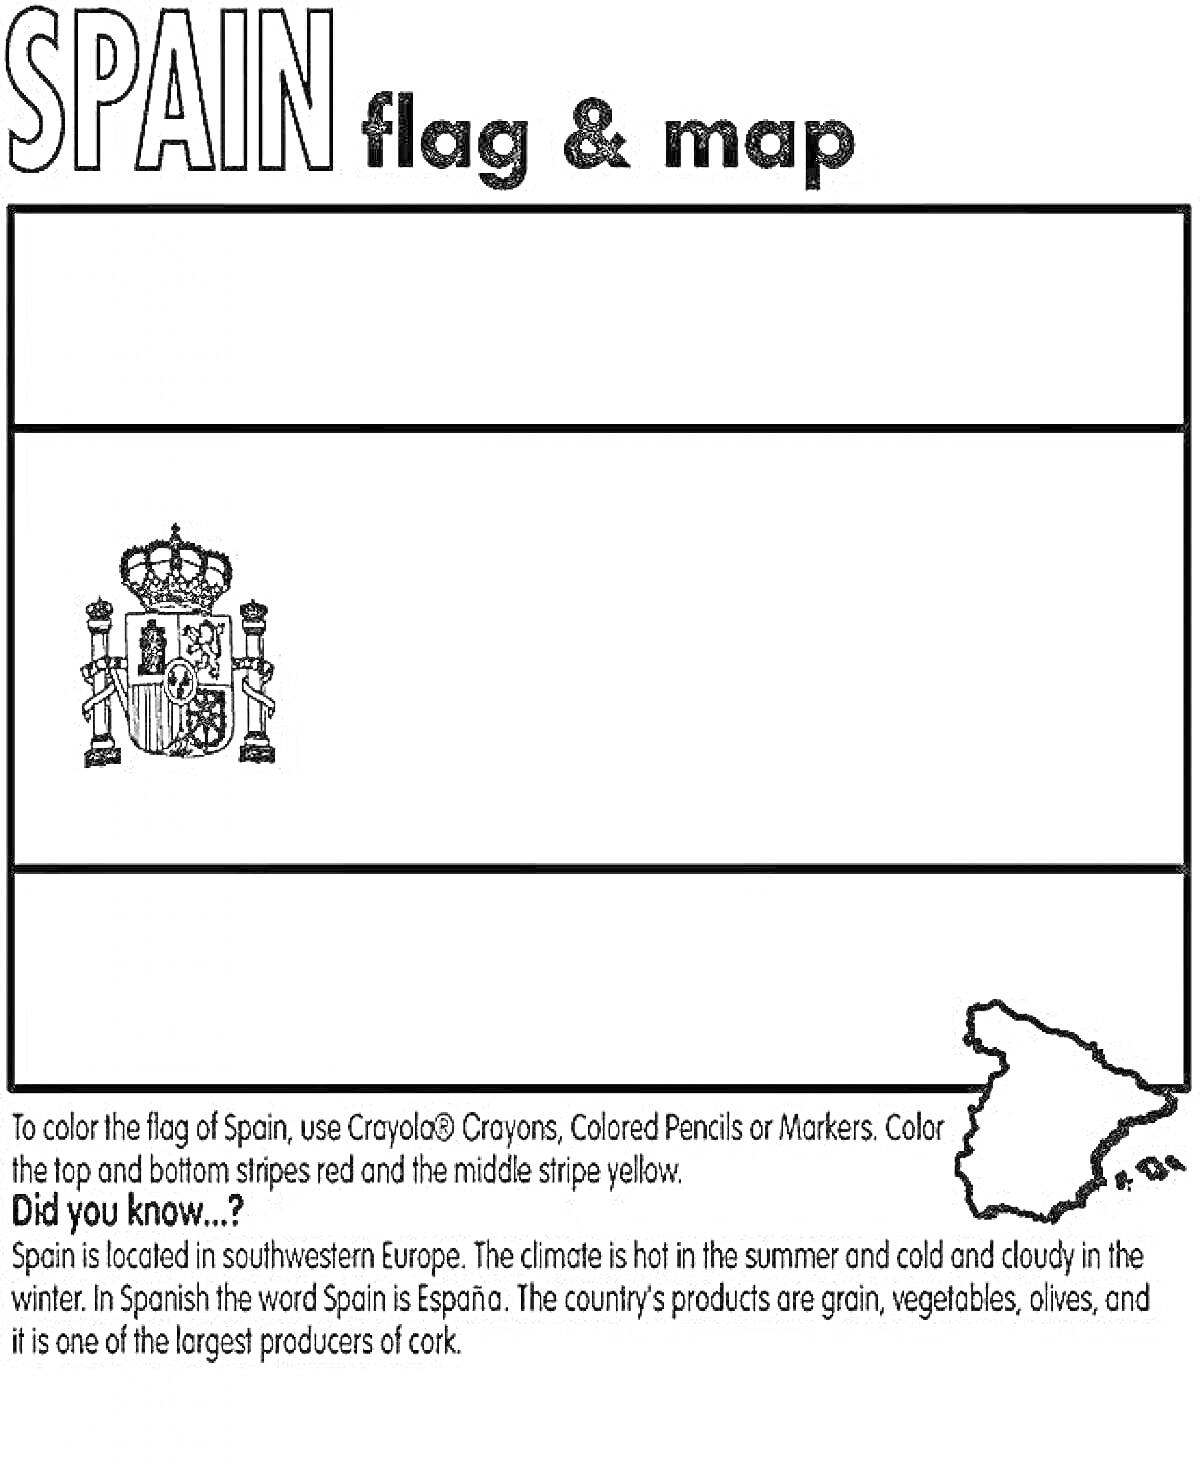 Раскраска Флаг и карта Испании с инструкцией по раскрашиванию, изображён герб, контур карты Испании и описание страны